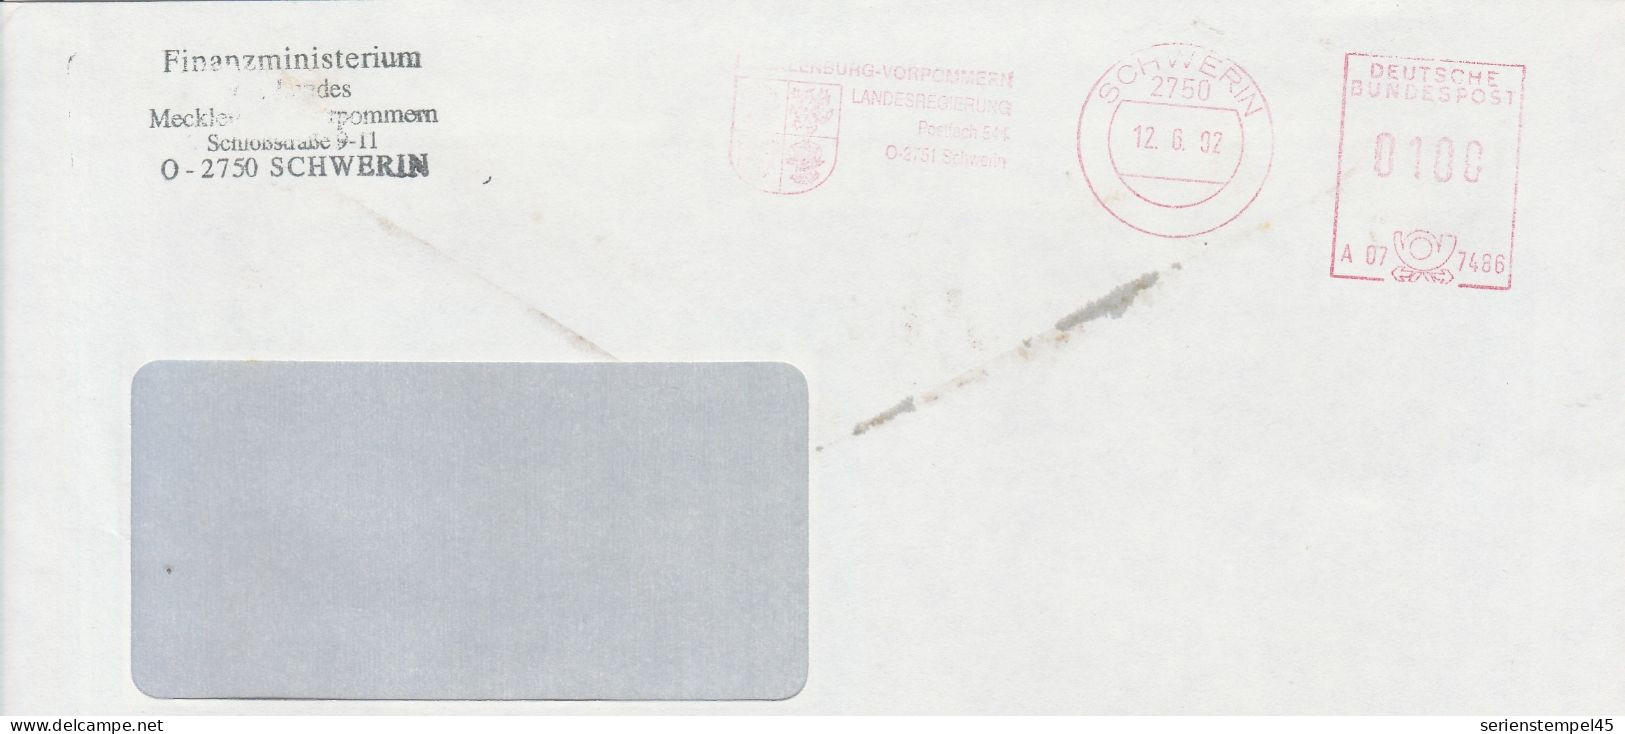 Deutsche Bundespost Brief Mit Freistempel VGO PLZ Oben Schwerin 1992 Finanzministerium A07 7486 - Macchine Per Obliterare (EMA)